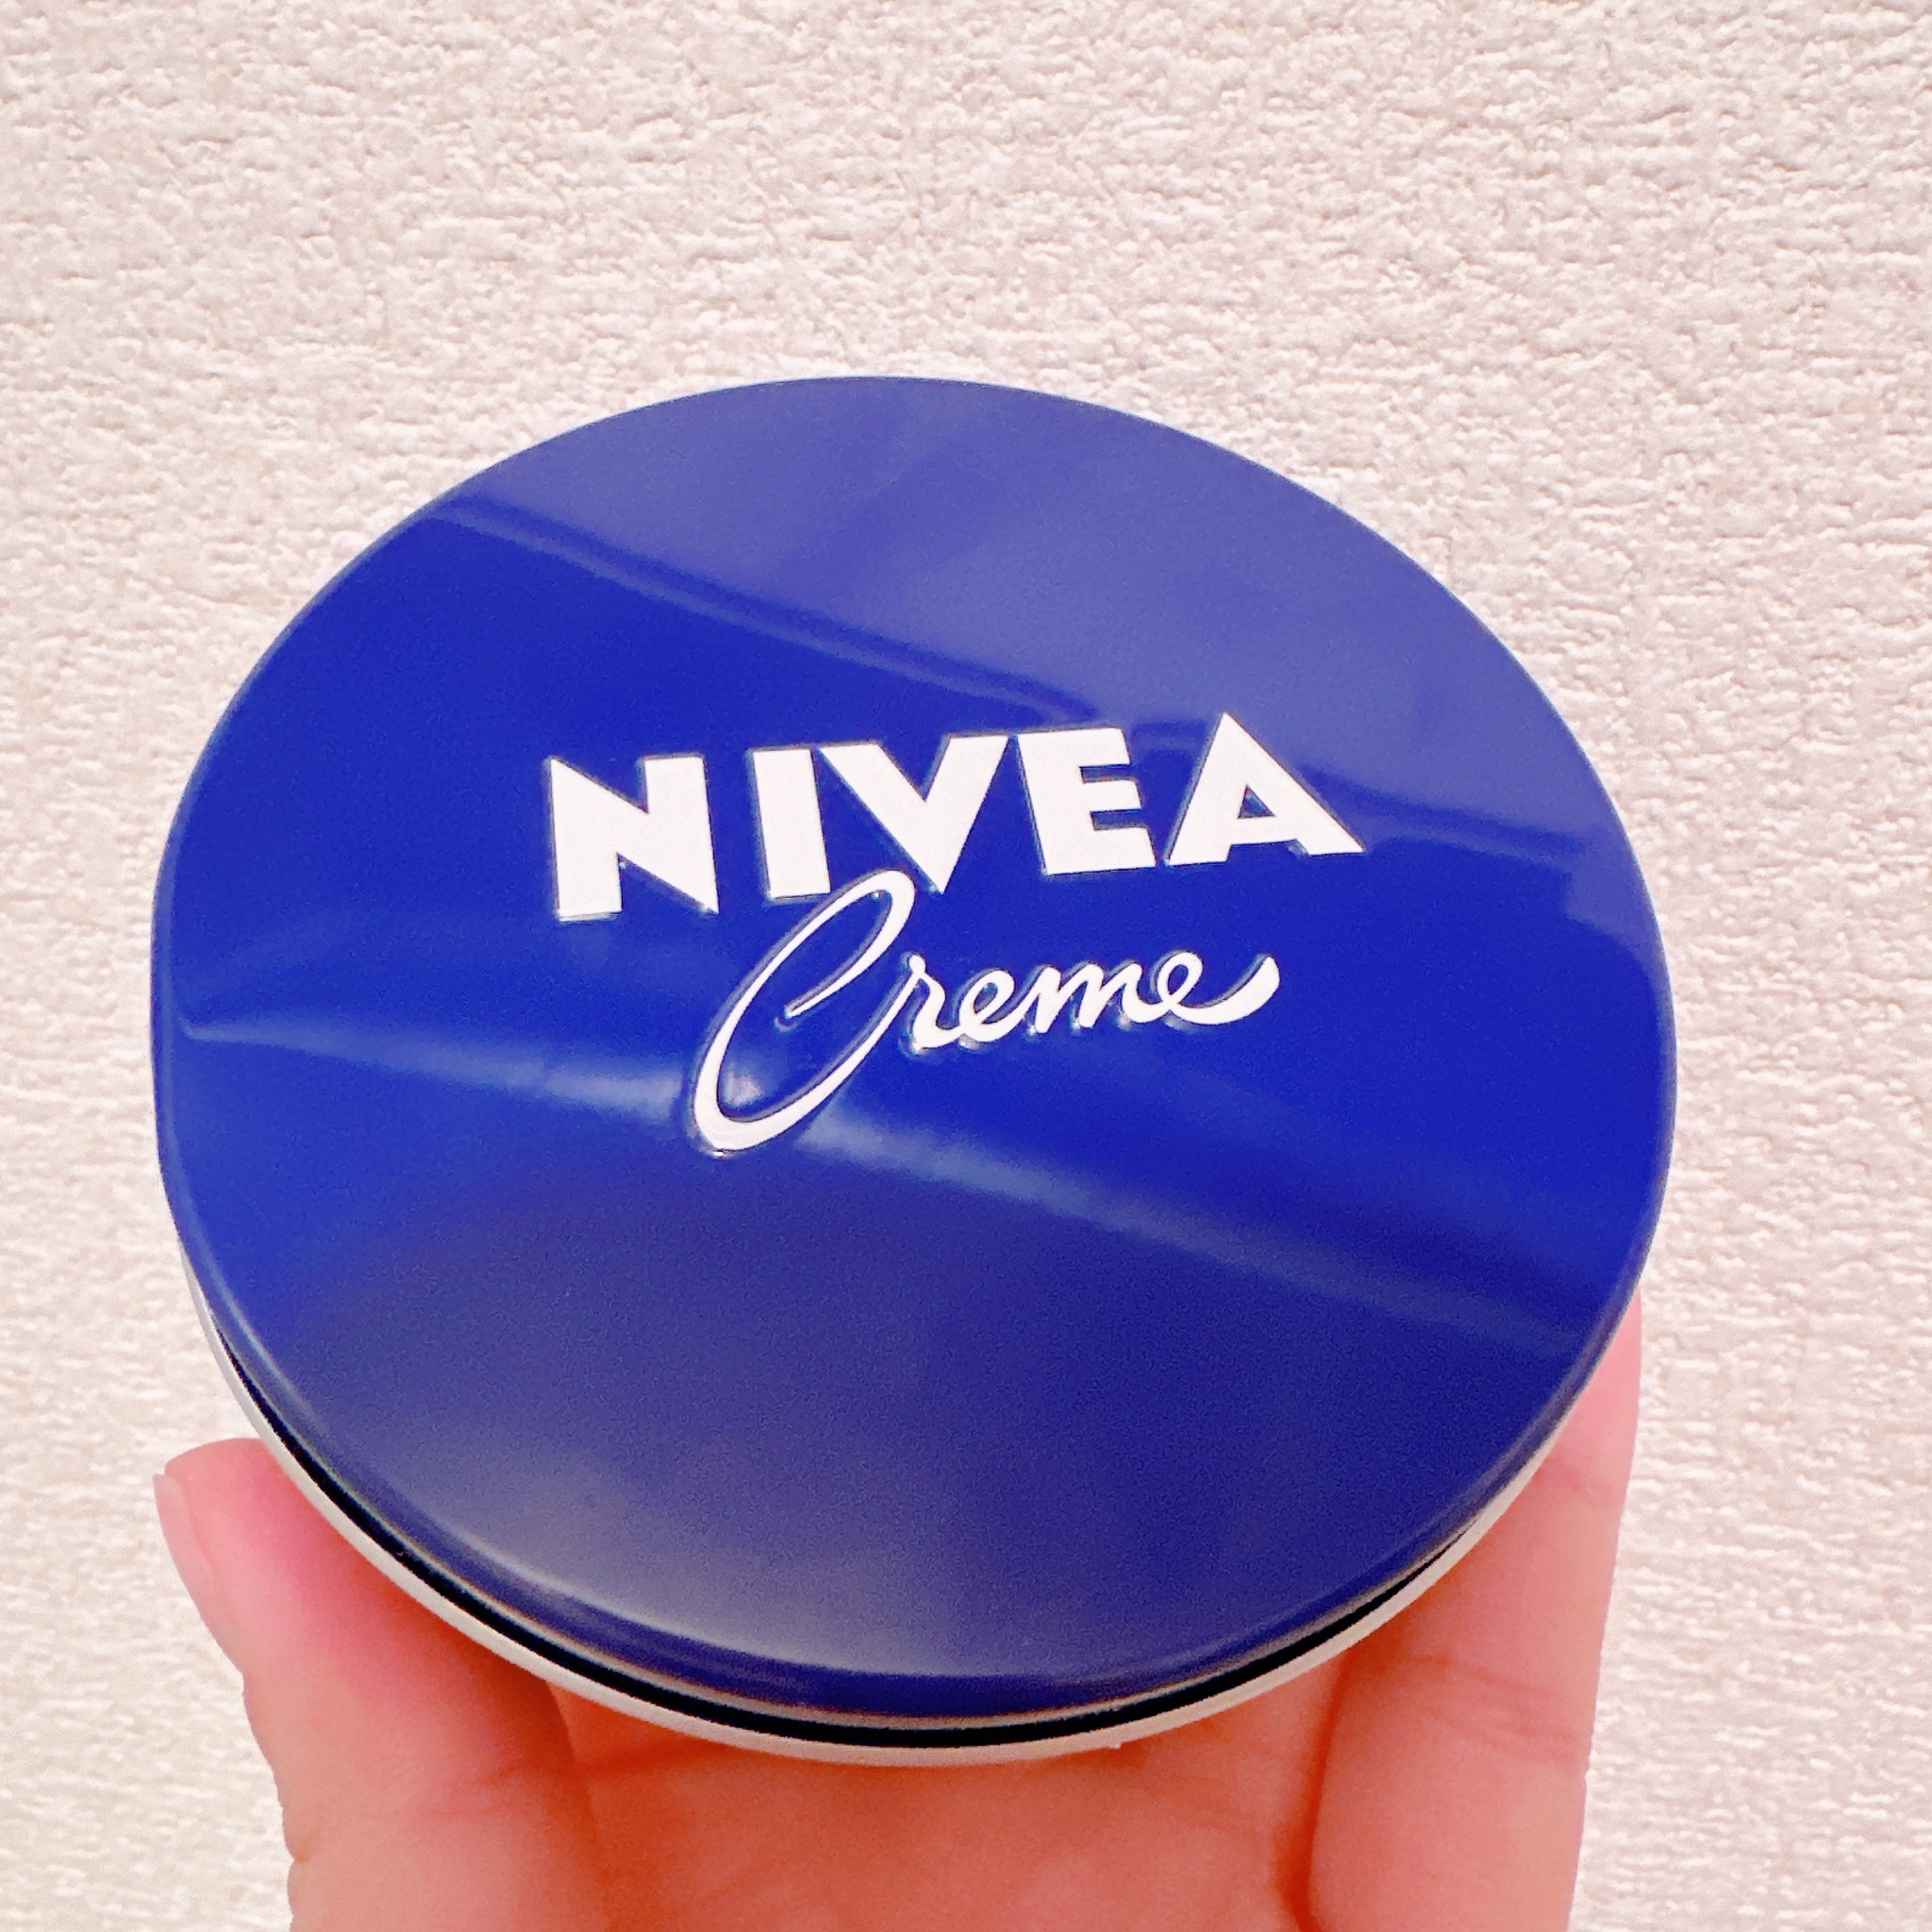 レア 稀少 ニベア NIVEA クリーム ロシア限定デザイン クリスマス 青缶 150ml×4 セット 未使用 送込